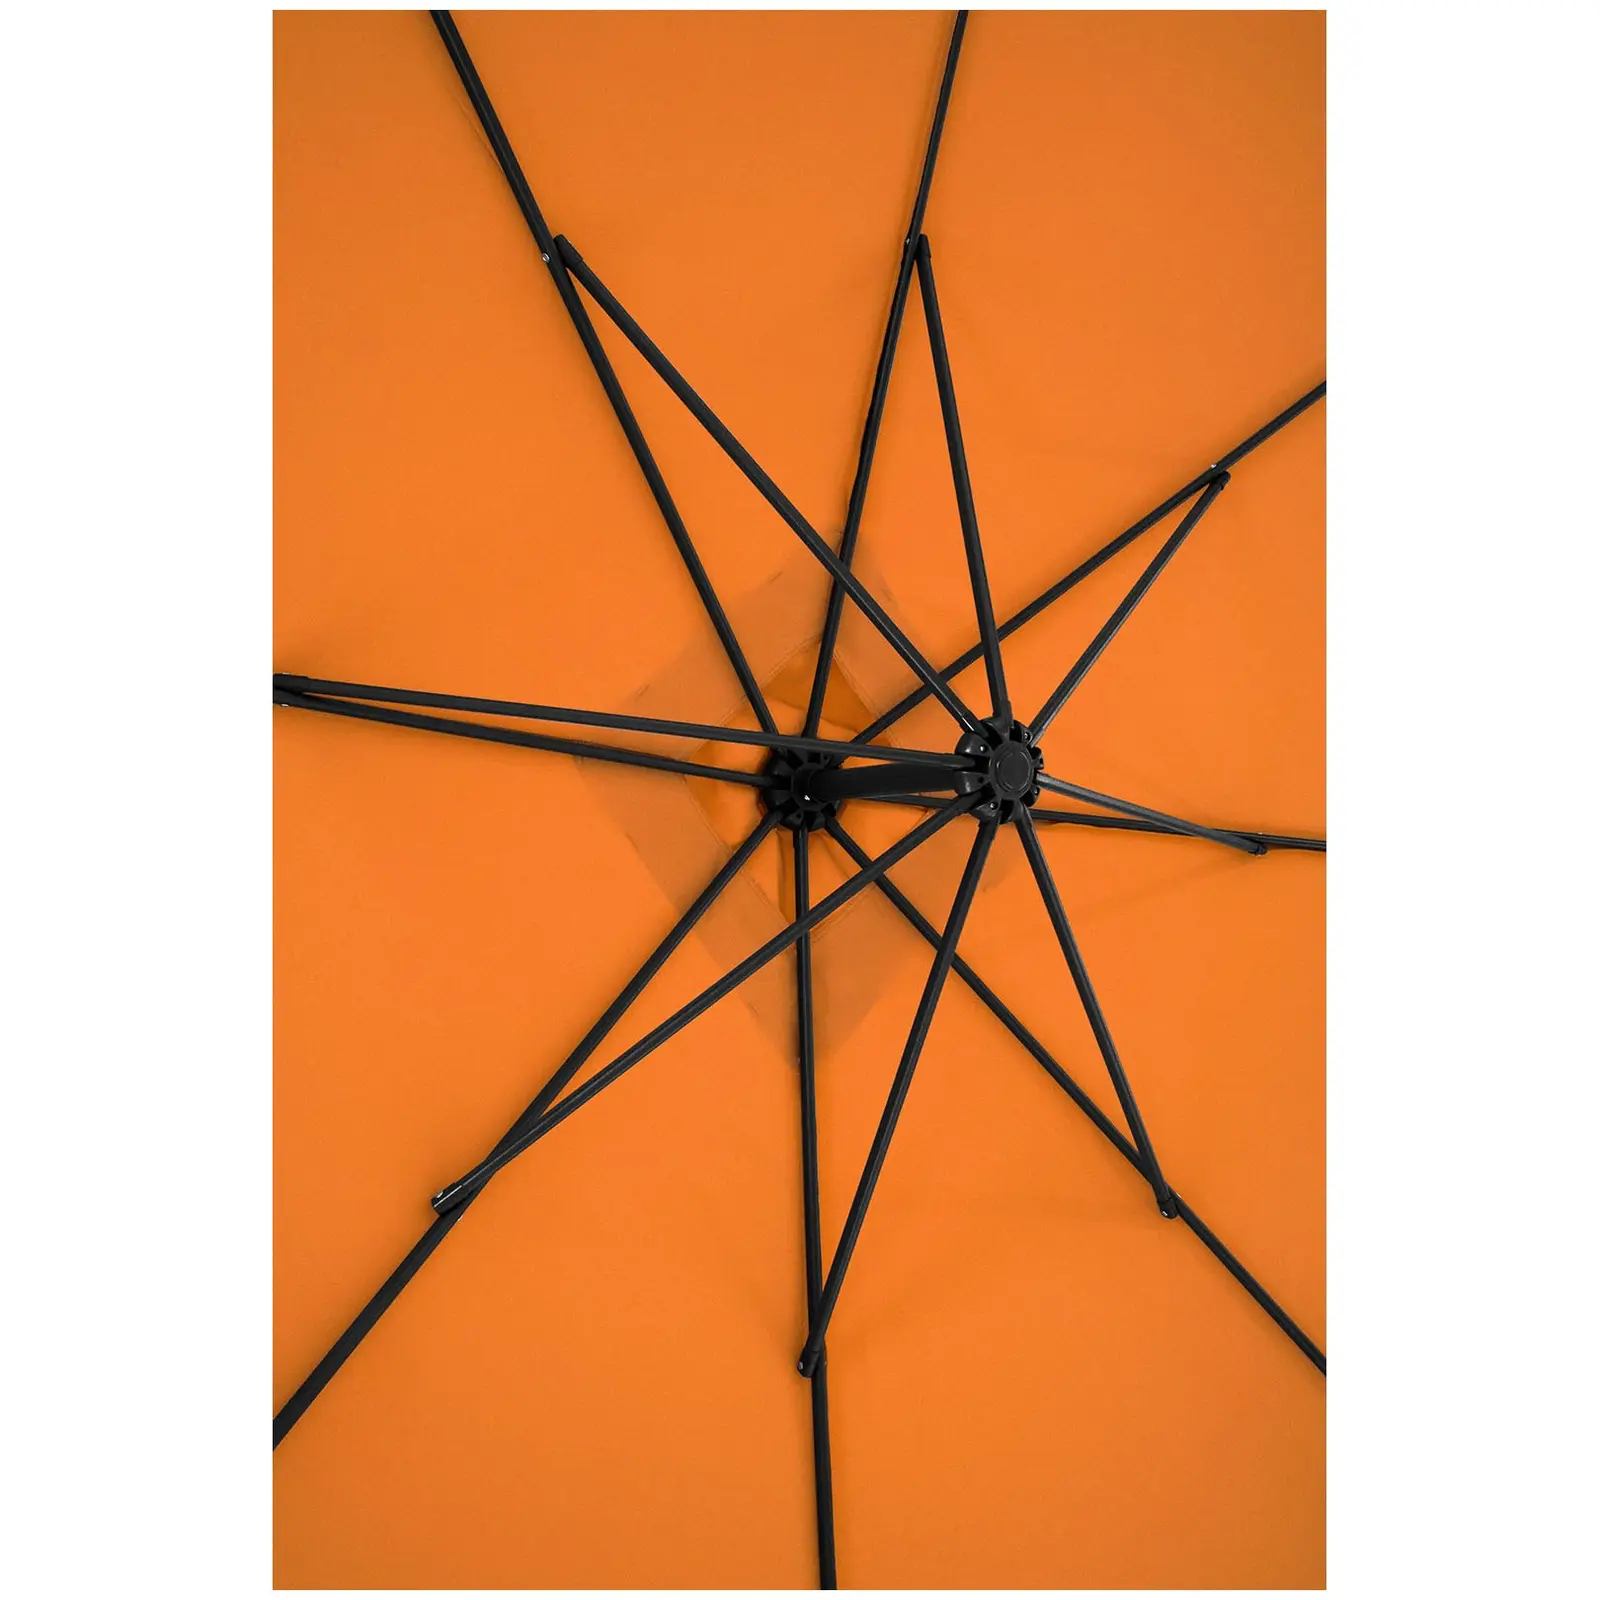 Ampelschirm - orange - rechteckig - 250 x 250 cm - neigbar